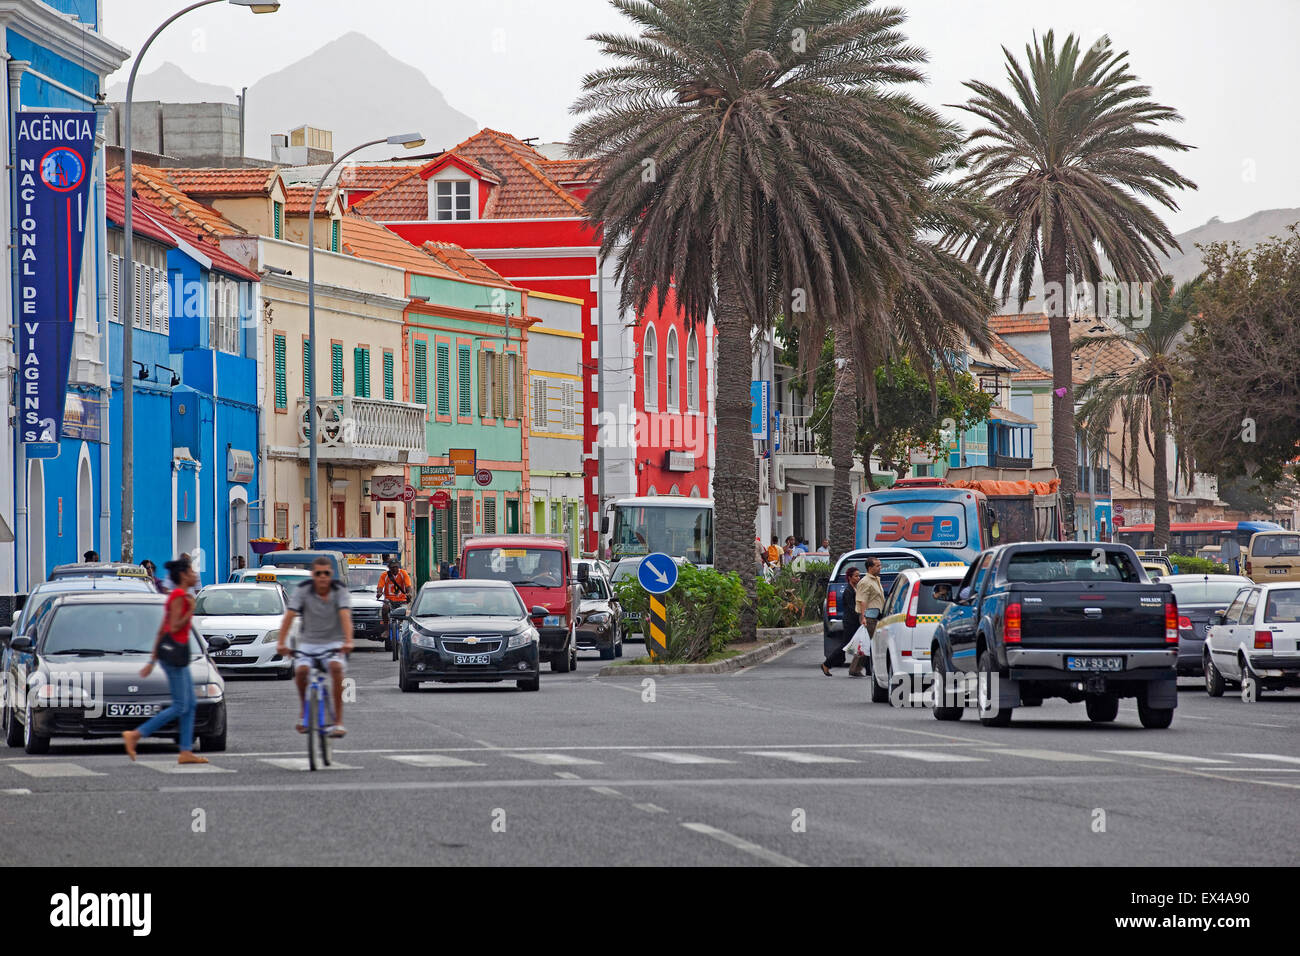 Verkehr und Geschäfte in der alten kolonialen Altstadt der Stadt Mindelo auf der Insel São Vicente, Kap Verde, Westafrika Stockfoto